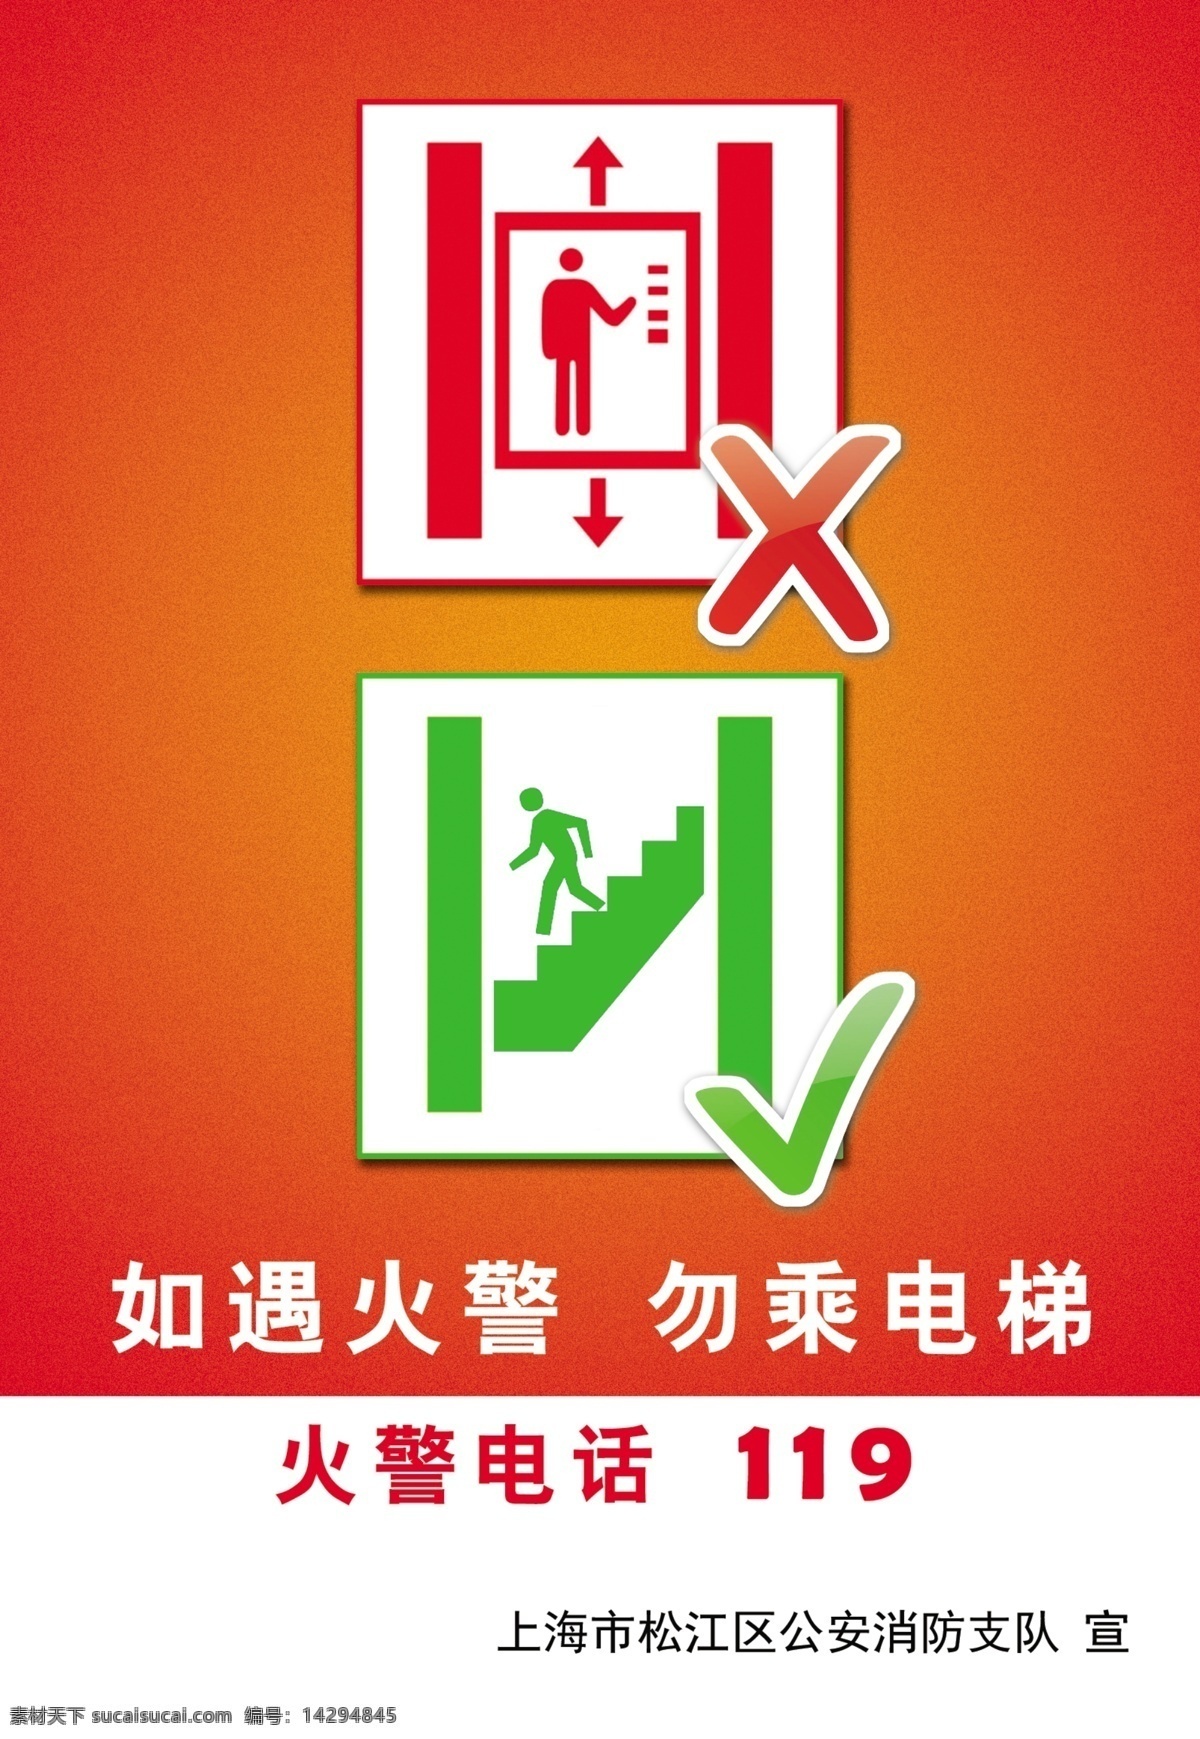 电梯消防宣传 消防 电梯 火警 安全